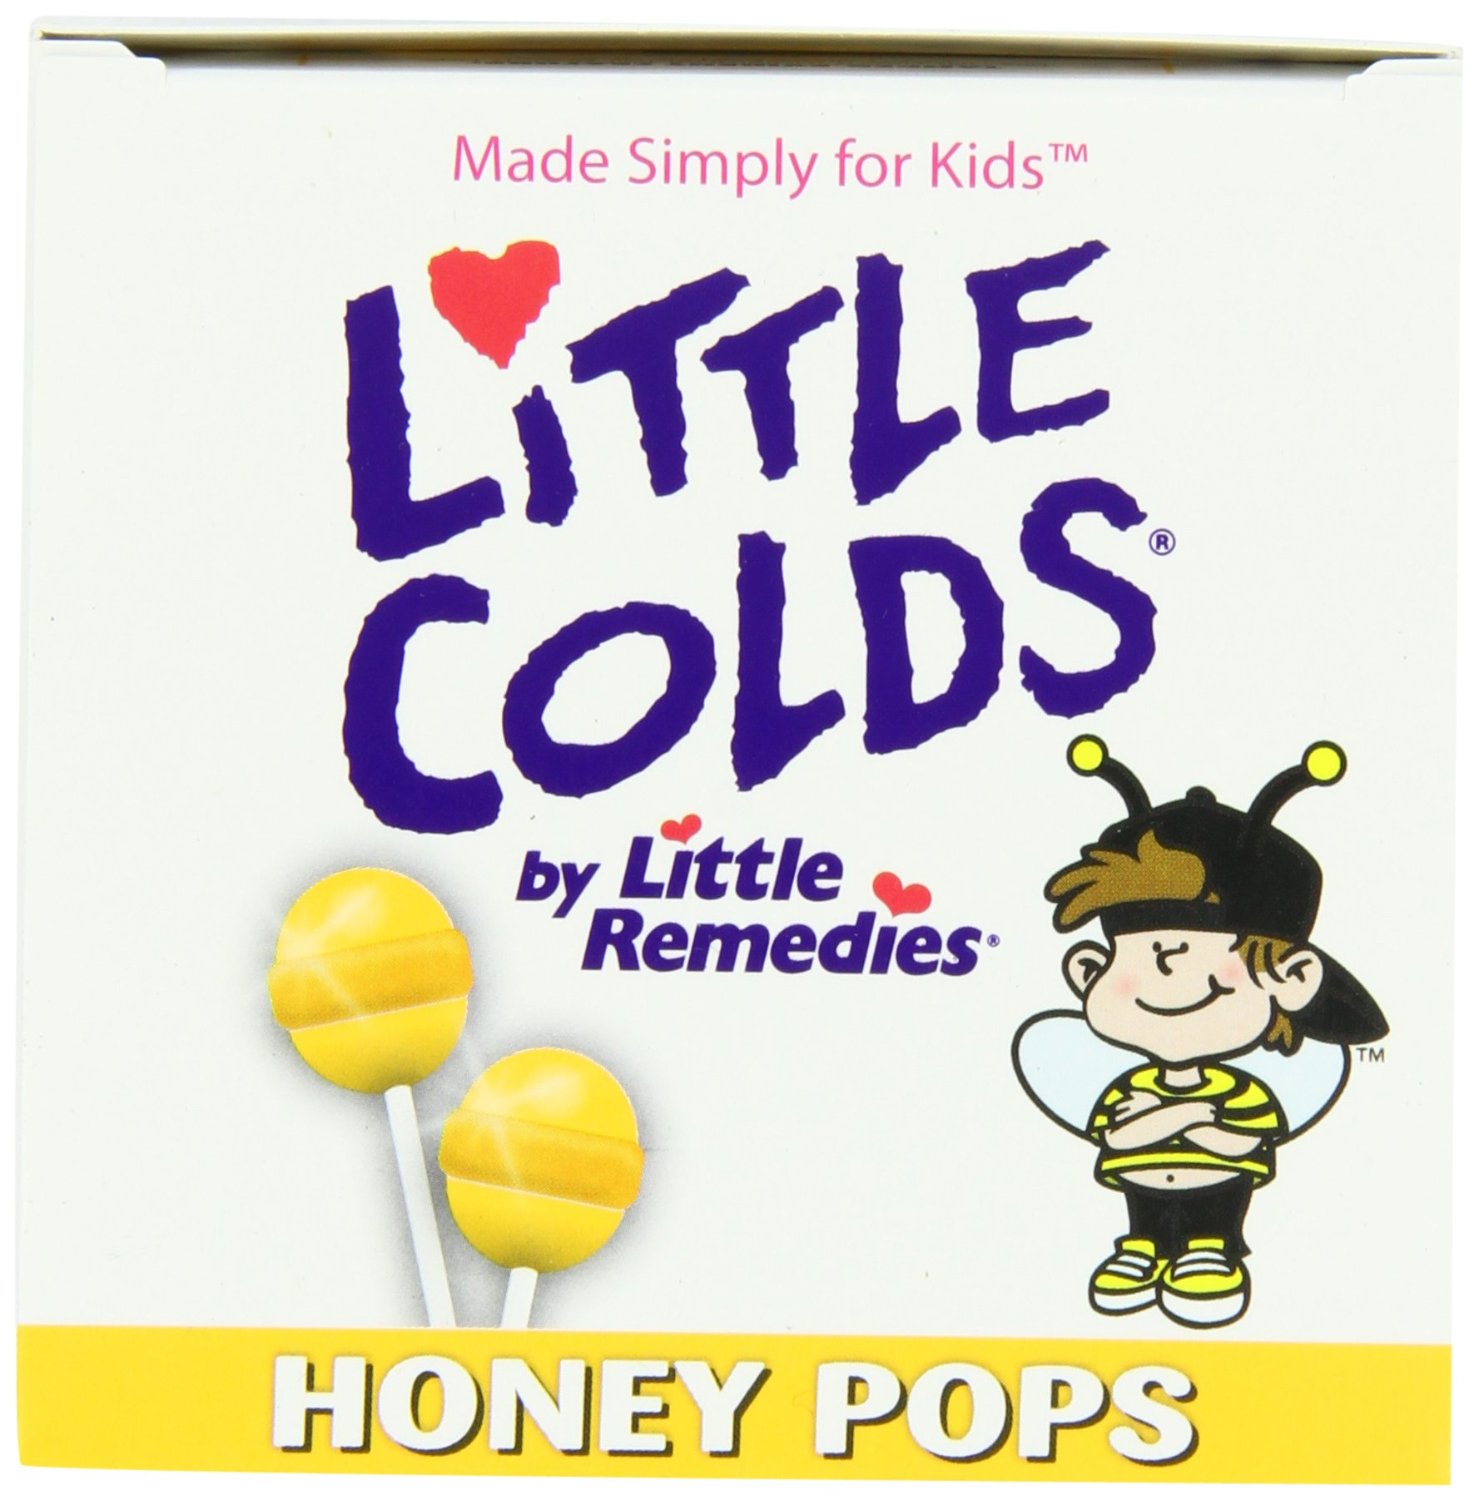 降！專為寶寶設計！Little Colds 寶寶蜂蜜水果味止咳棒棒糖10支 $3.55包郵